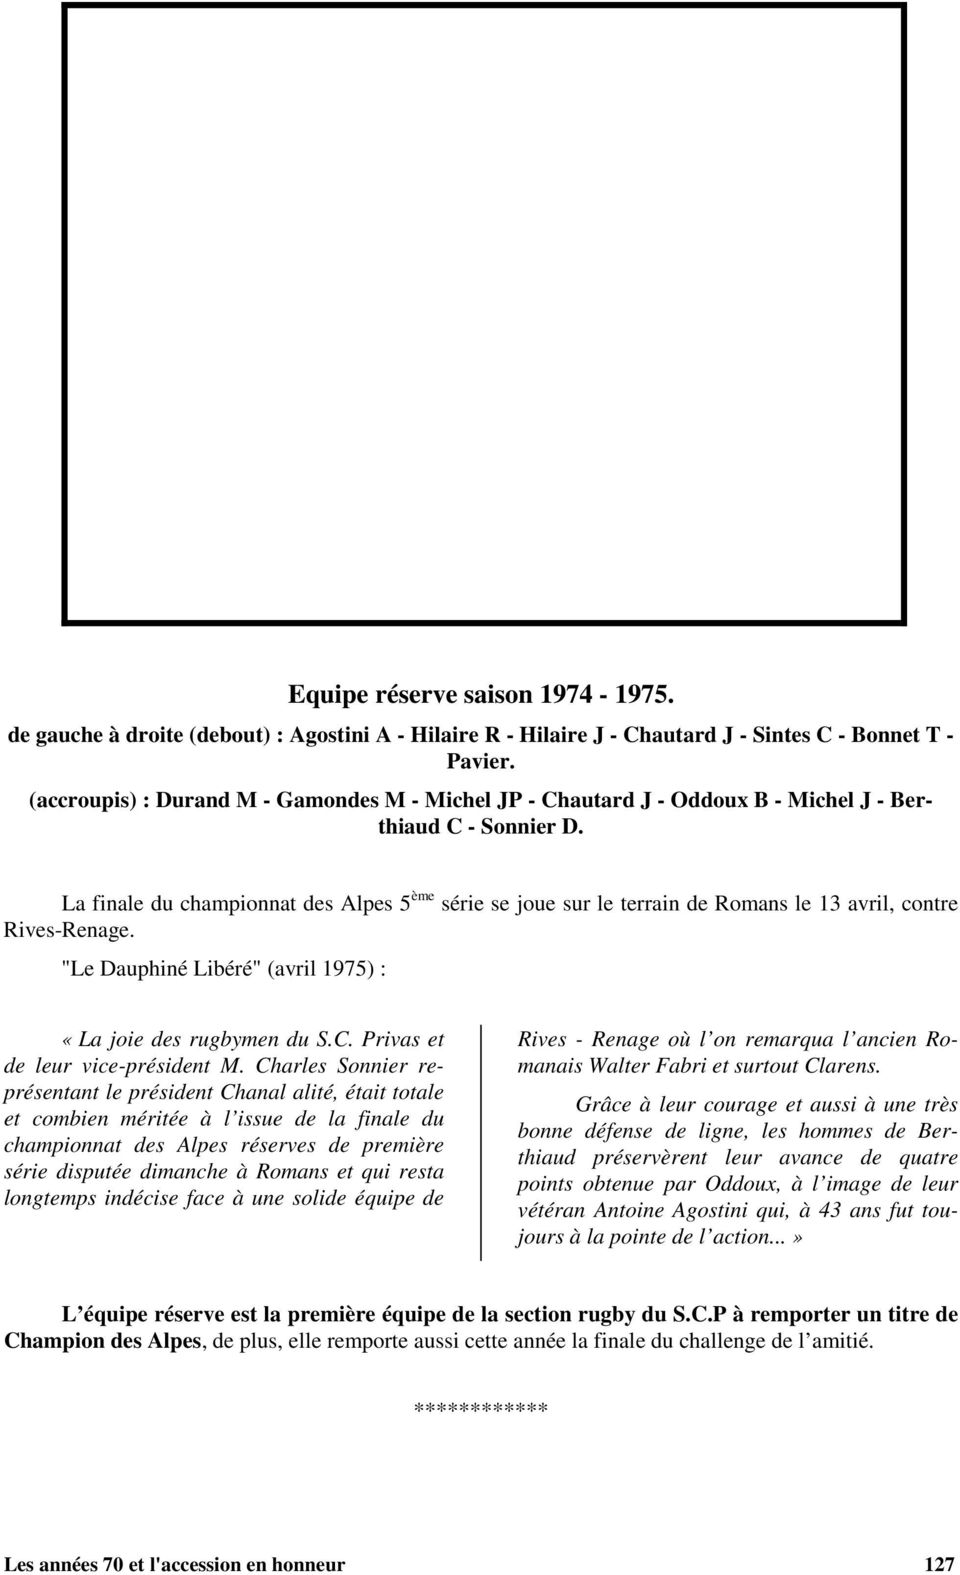 La finale du championnat des Alpes 5 ème série se joue sur le terrain de Romans le 13 avril, contre Rives-Renage. "Le Dauphiné Libéré" (avril 1975) : «La joie des rugbymen du S.C.